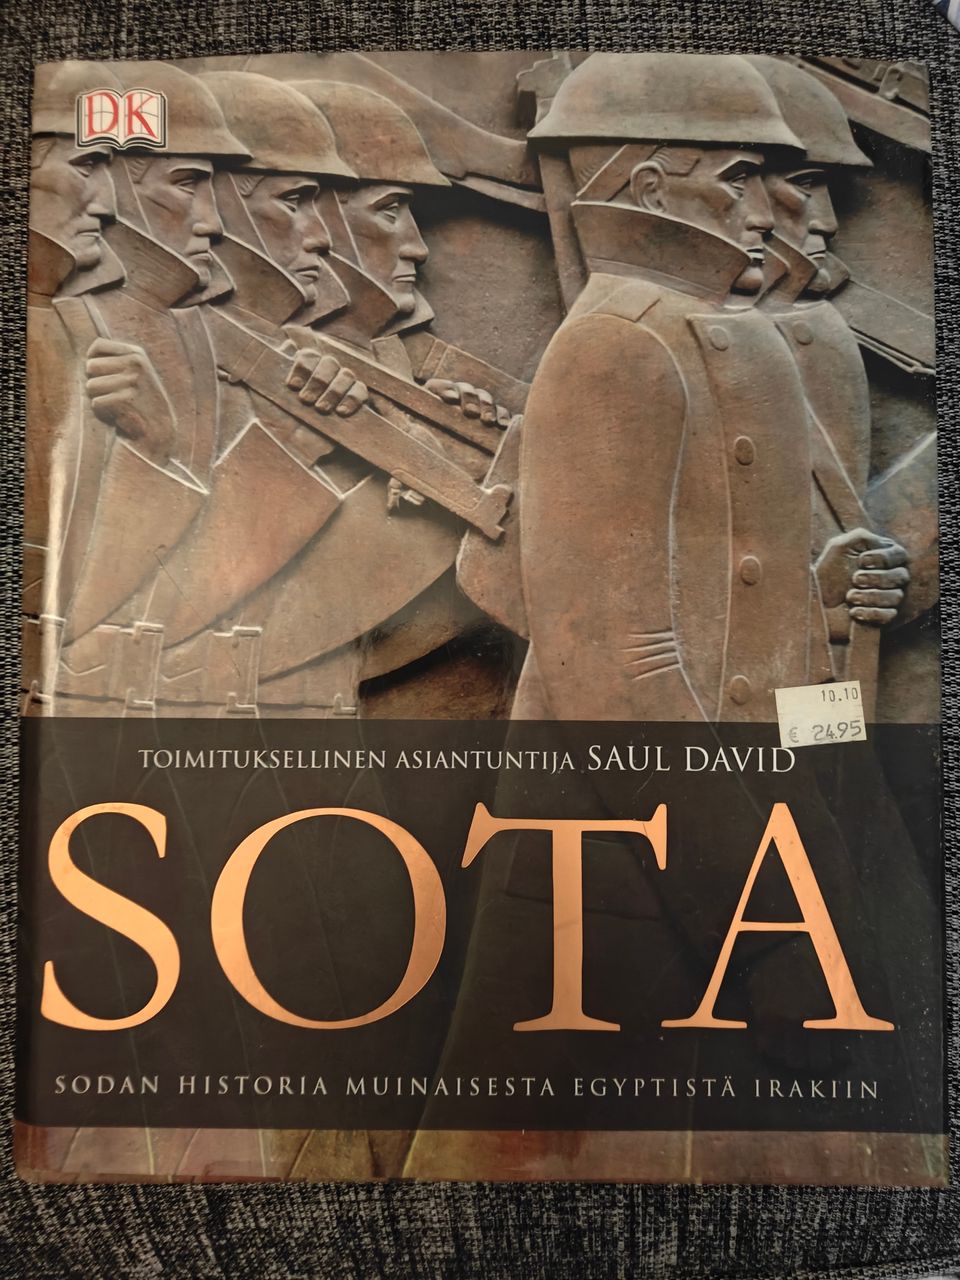 SAUL DAVID : SOTA : SODAN HISTORIA MUINAISESTA EGYPTISTÄ IRAKIIN